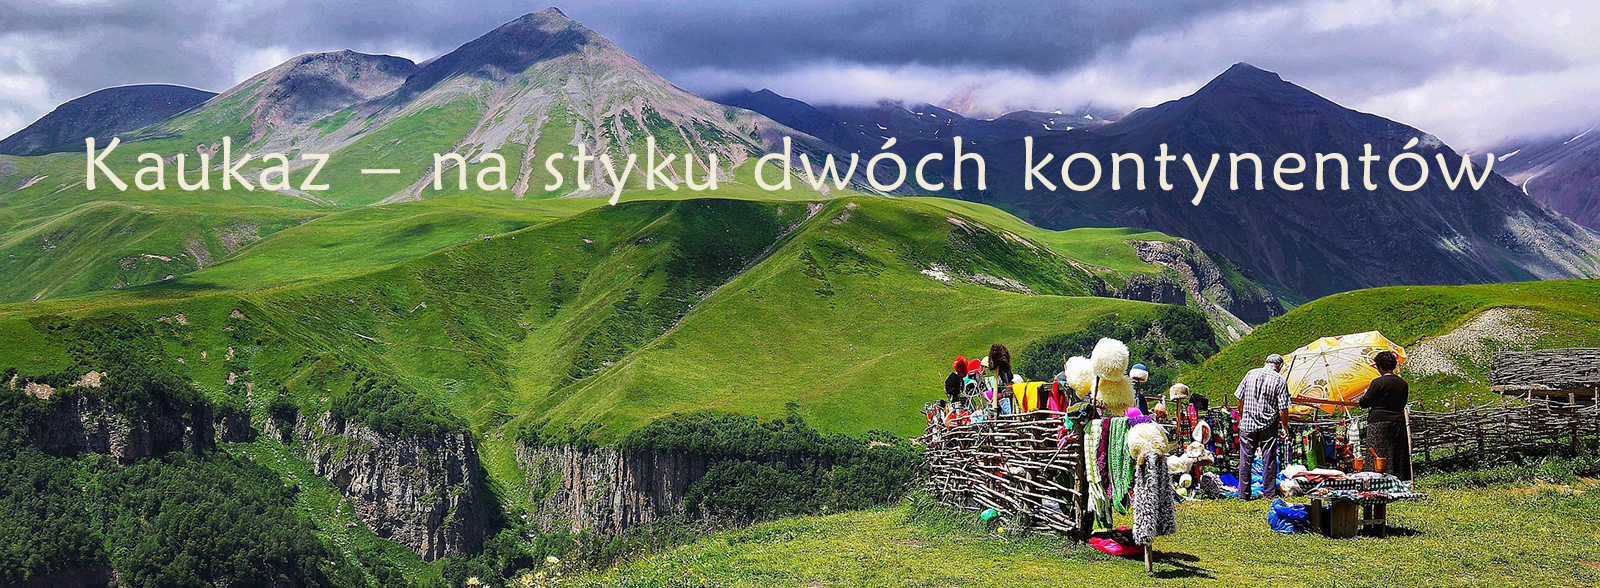 Baner z widokiem na góry Kaukazu